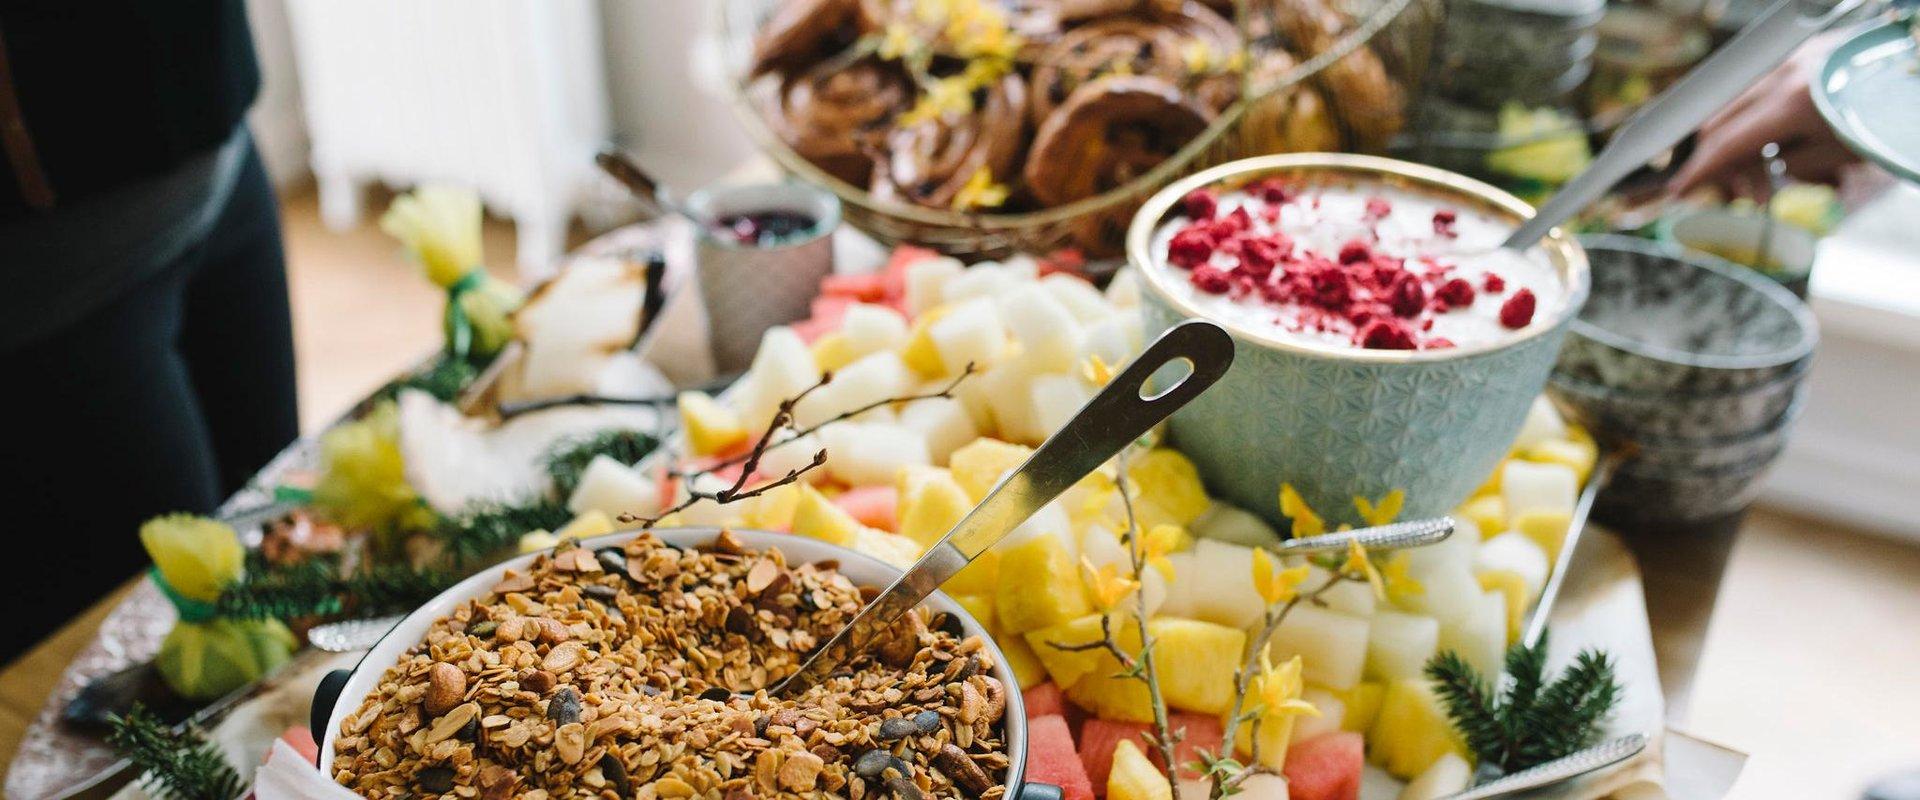 Pohjois-Viron Lahemaan alueen ravintolat esittelevät viikon aikana alueelle ominaista ruokaa erityisen ravintolaviikon ruokalistalla. Ravintolaviikko 